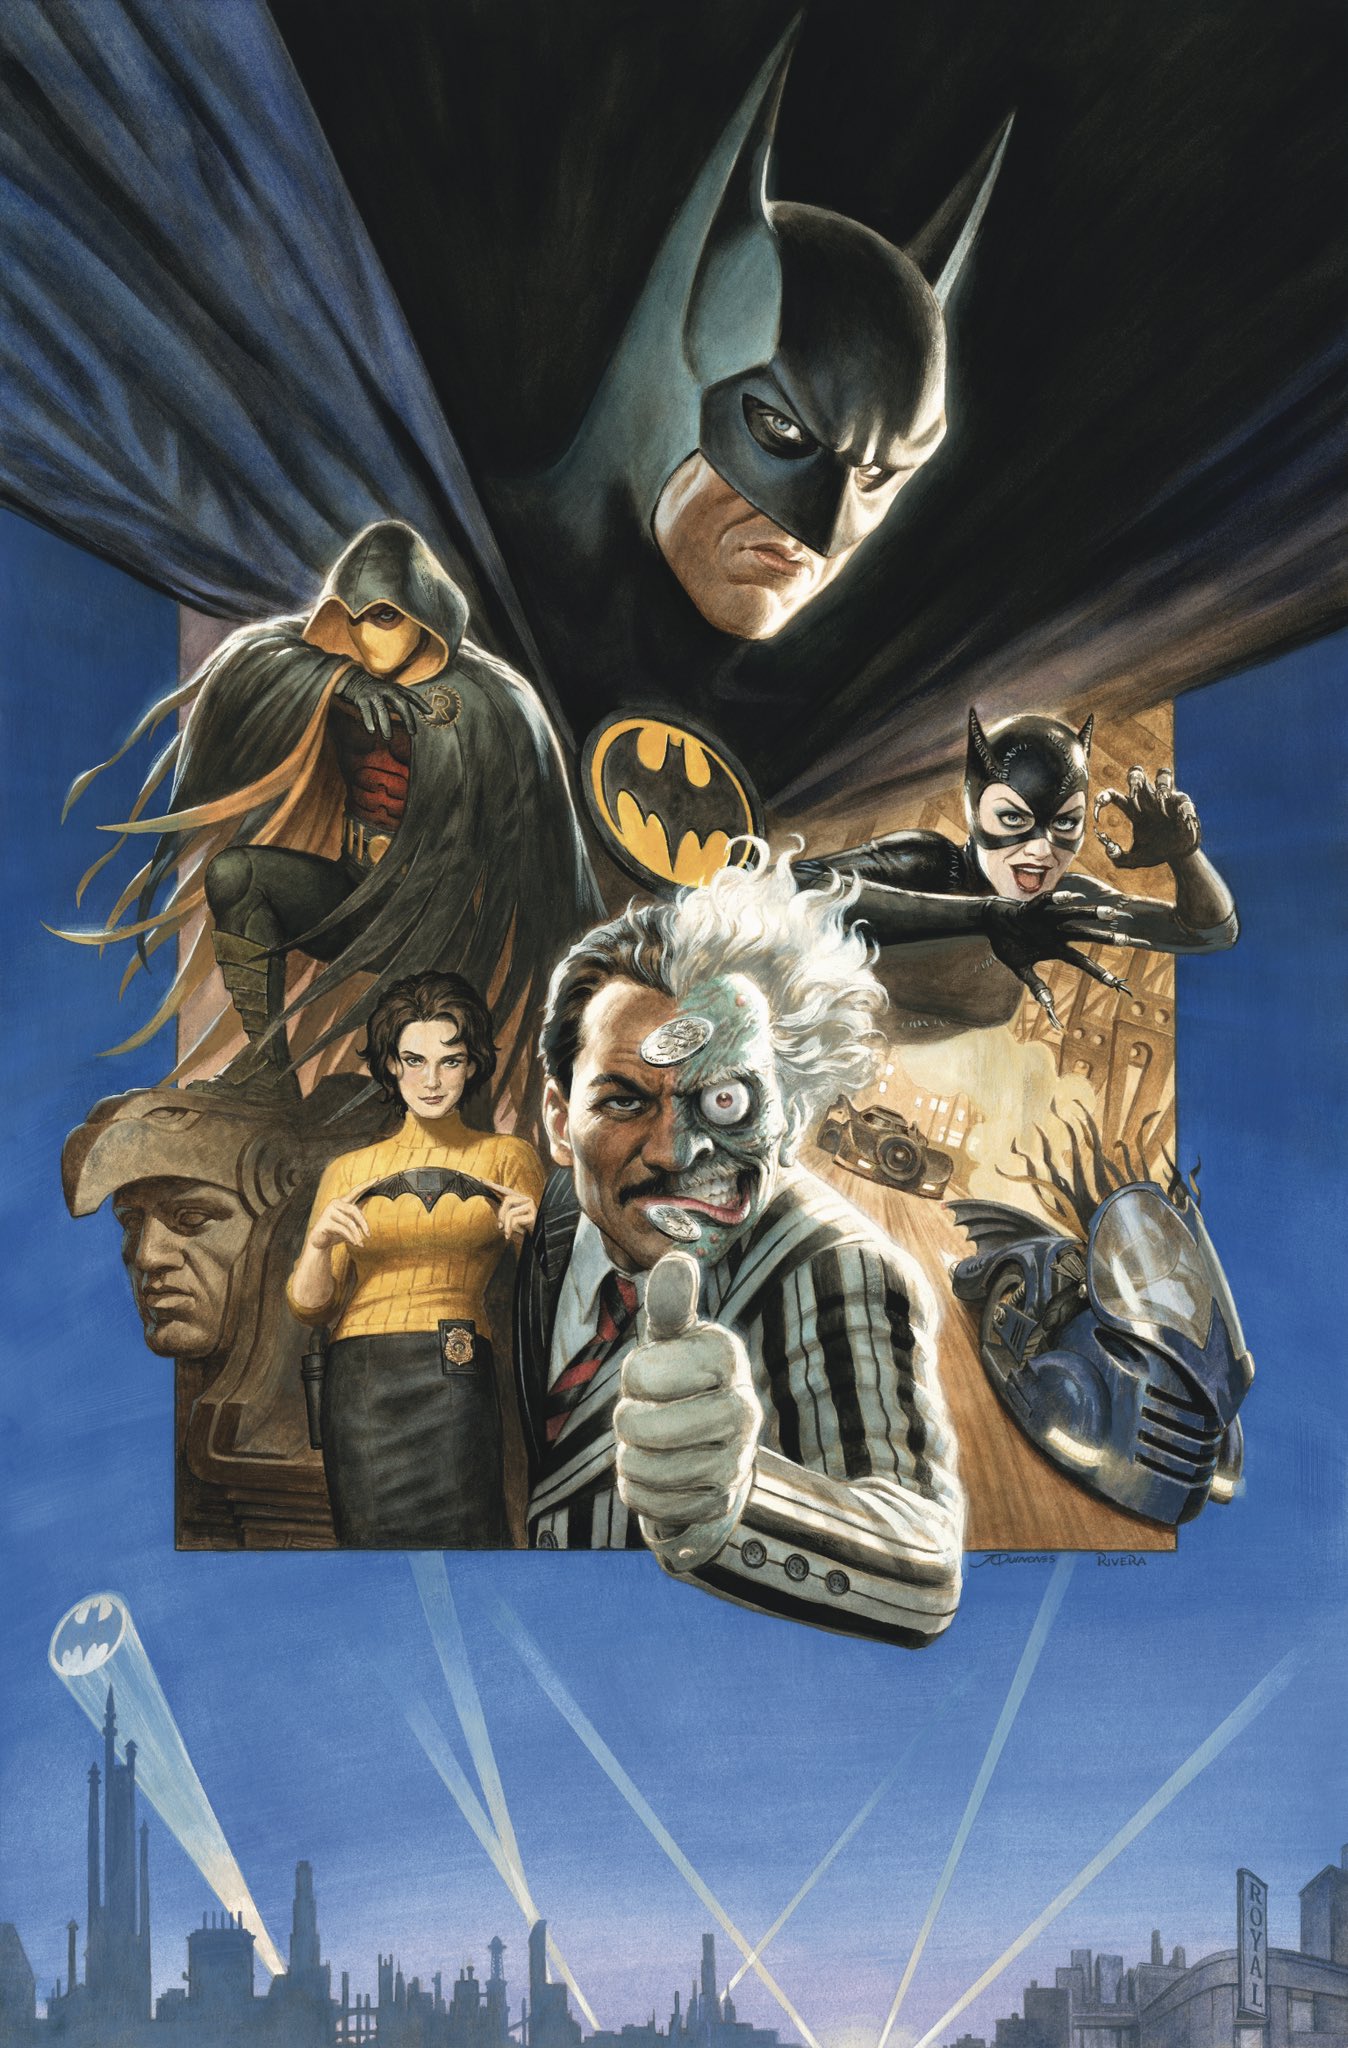 Batman '89 by Florey – Vice Press